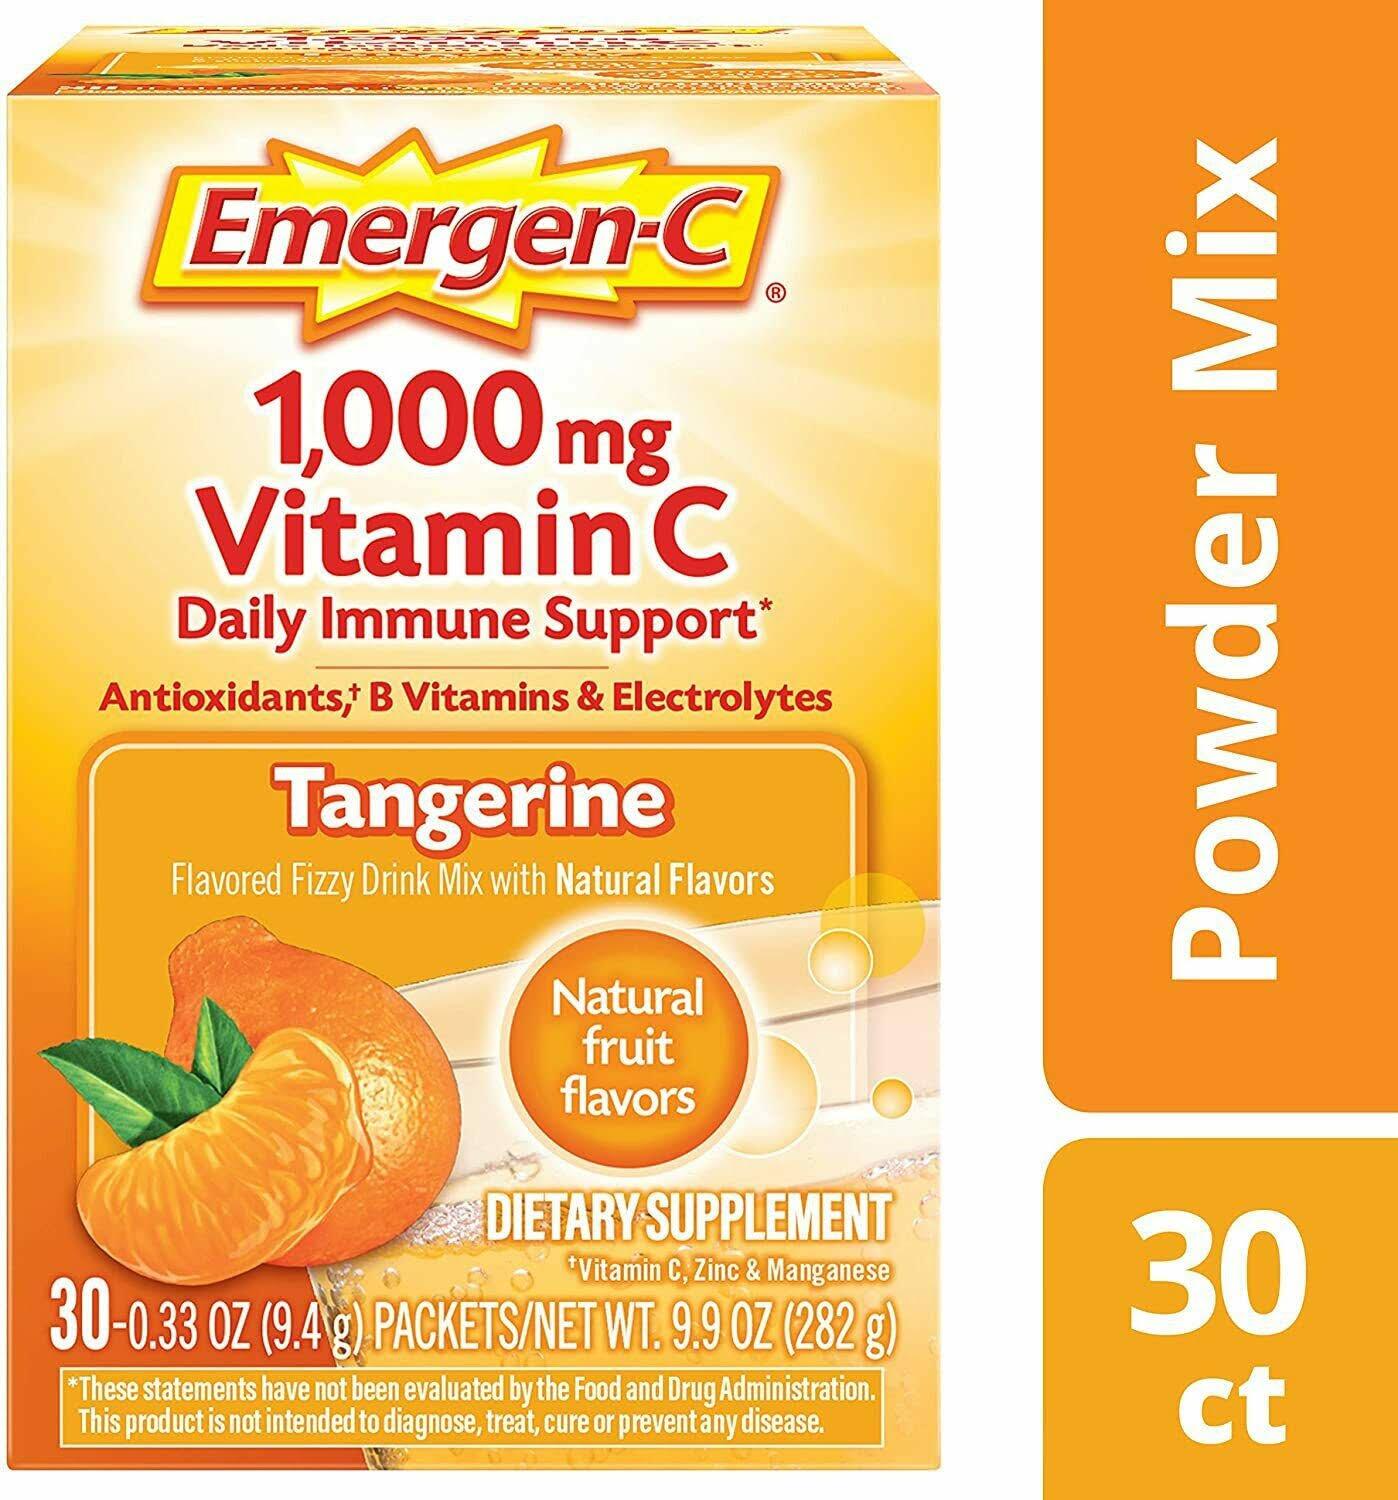 Emergen-C Tangerine Vitamin C Flavored Fizzy Drink Mix Supplement - 1,000mg, 0.33oz, 30ct